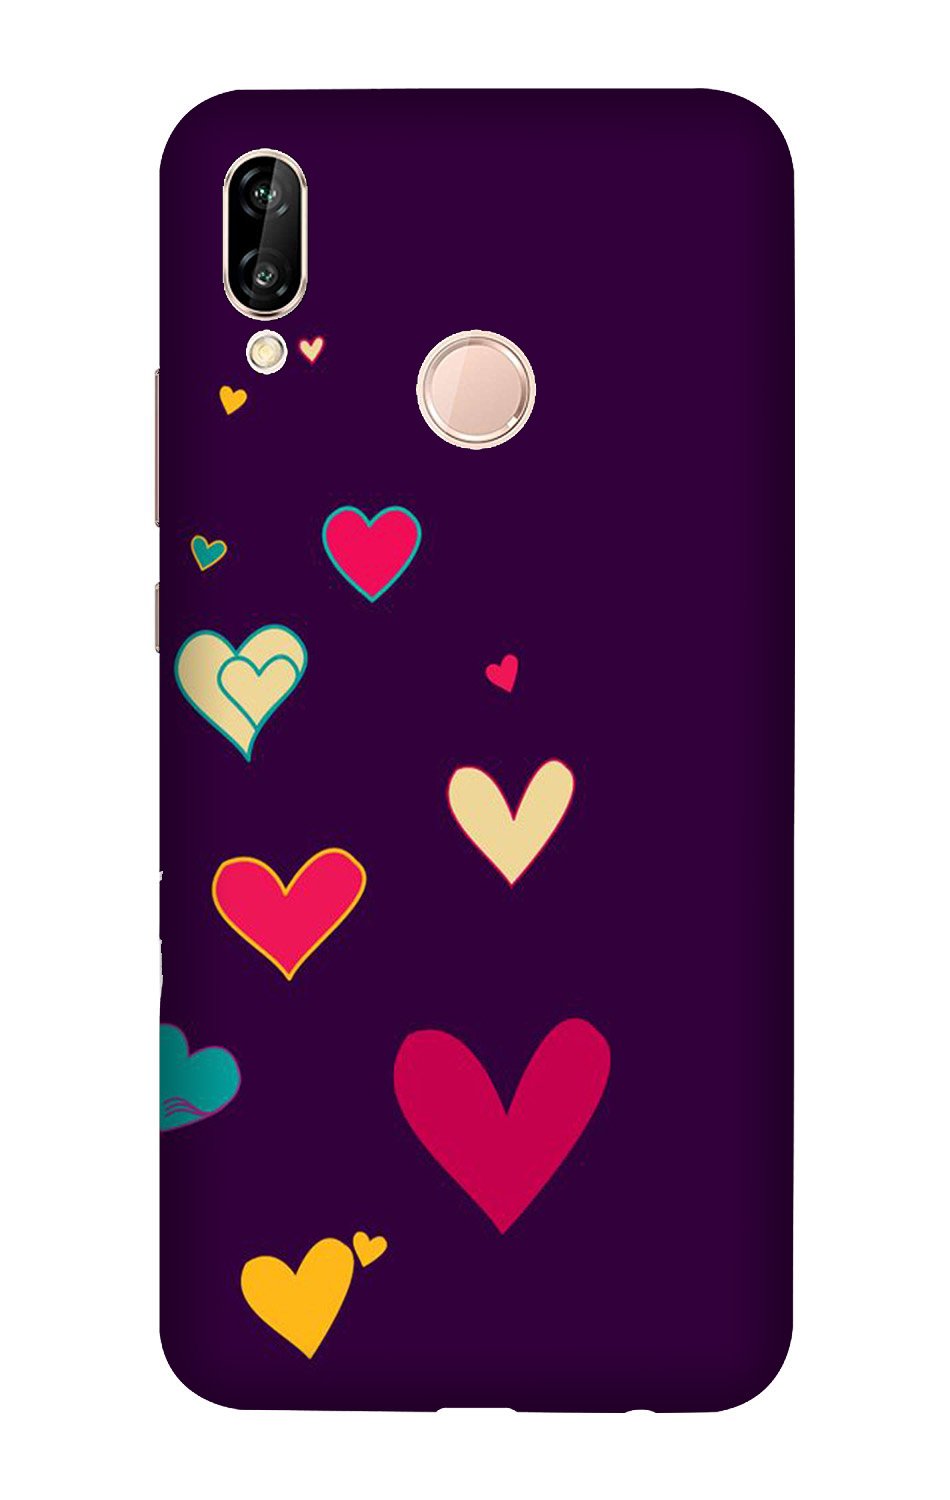 Purple Background Case for Vivo X21(Design - 107)